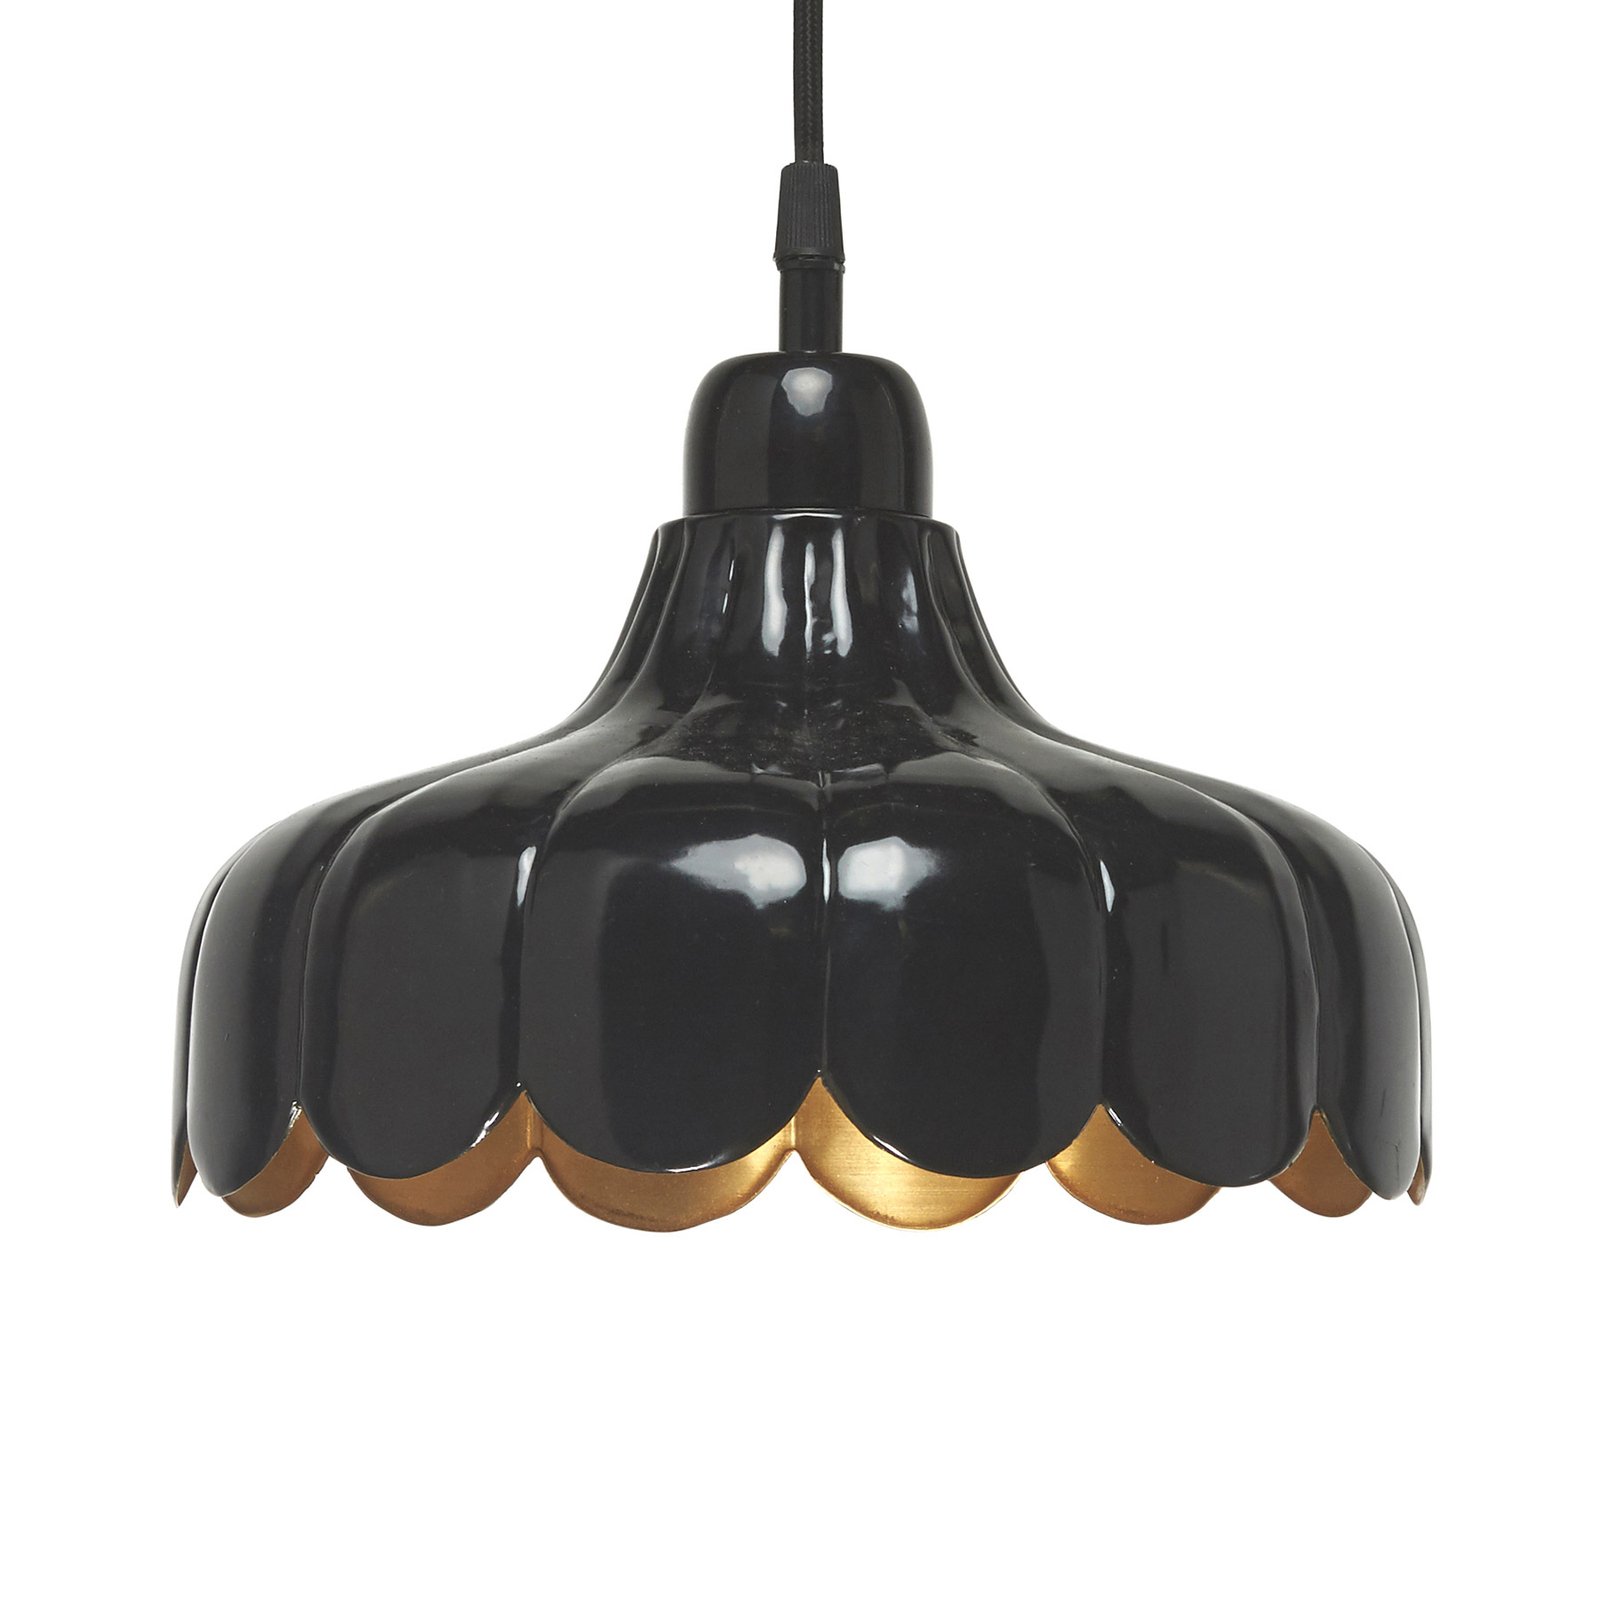 PR Home hanglamp Wells Small zwart/goud Ø 24 cm stekker